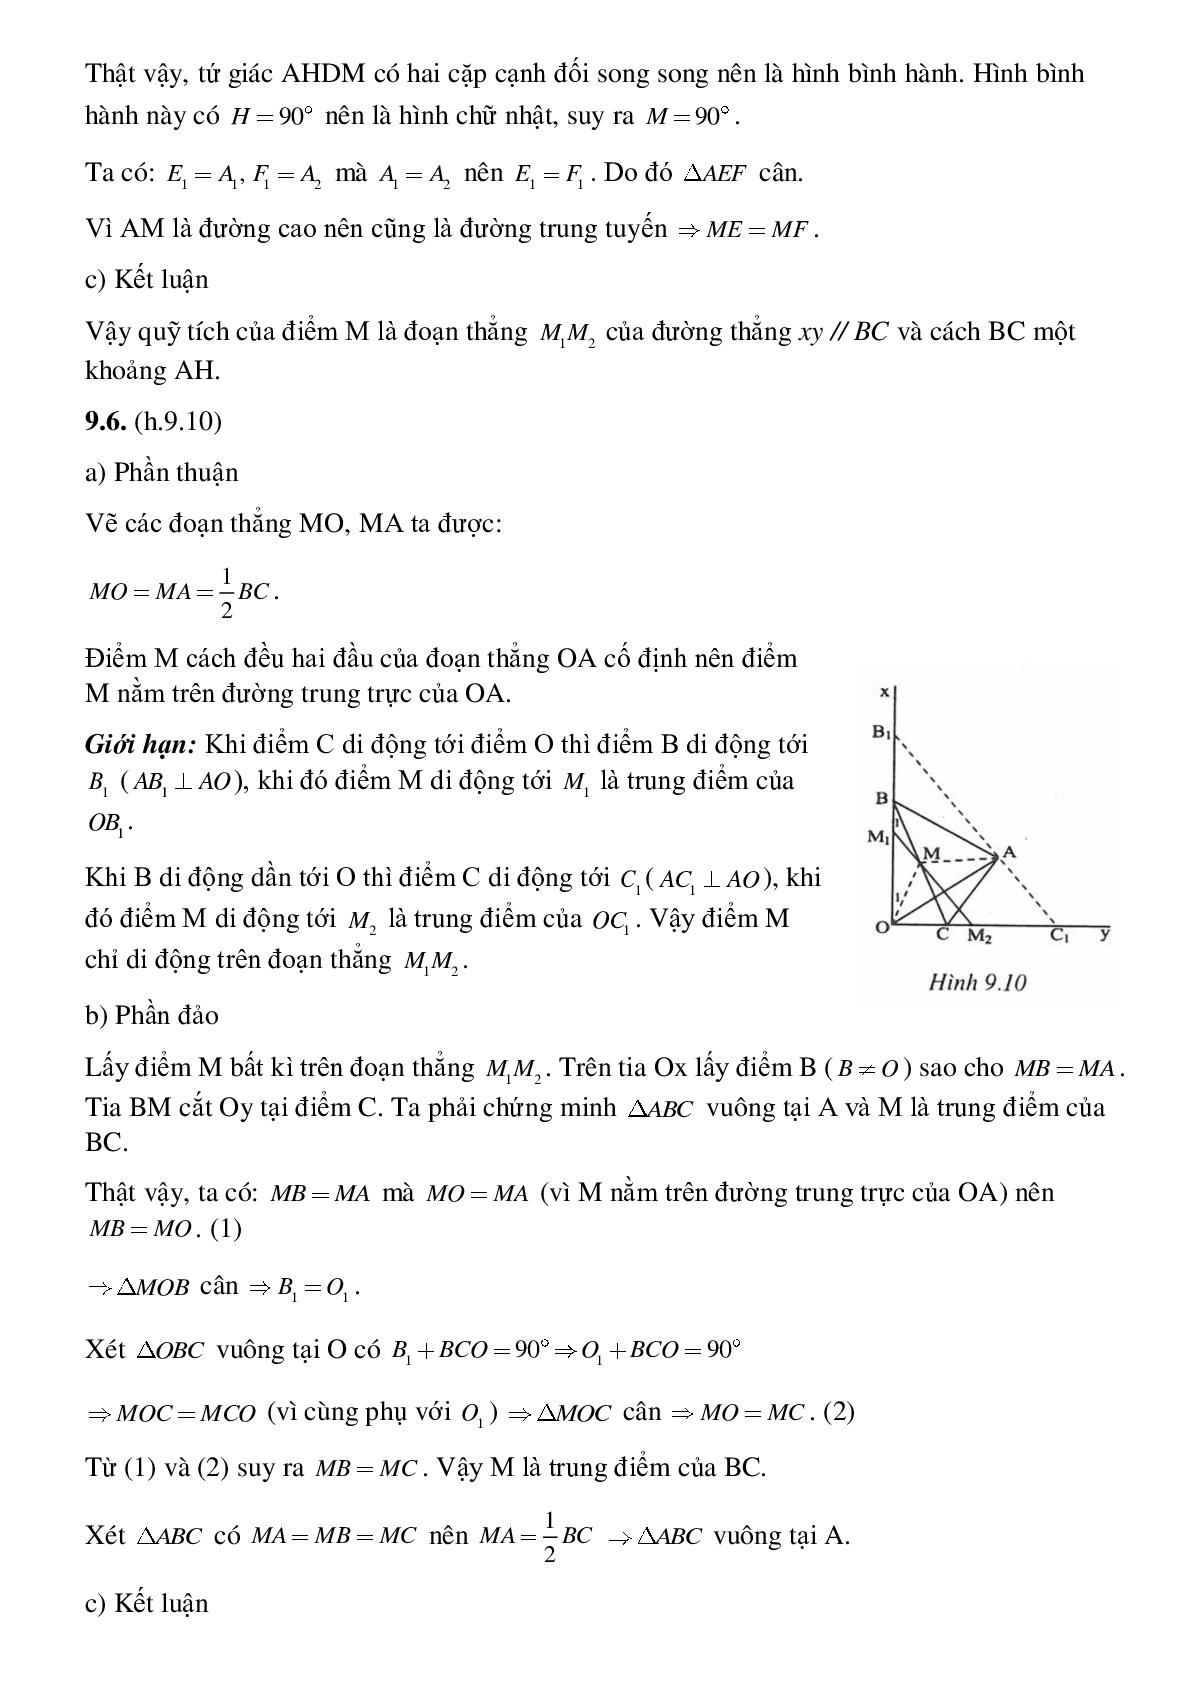 Toán quỹ tích - Hình học toán 8 (trang 10)